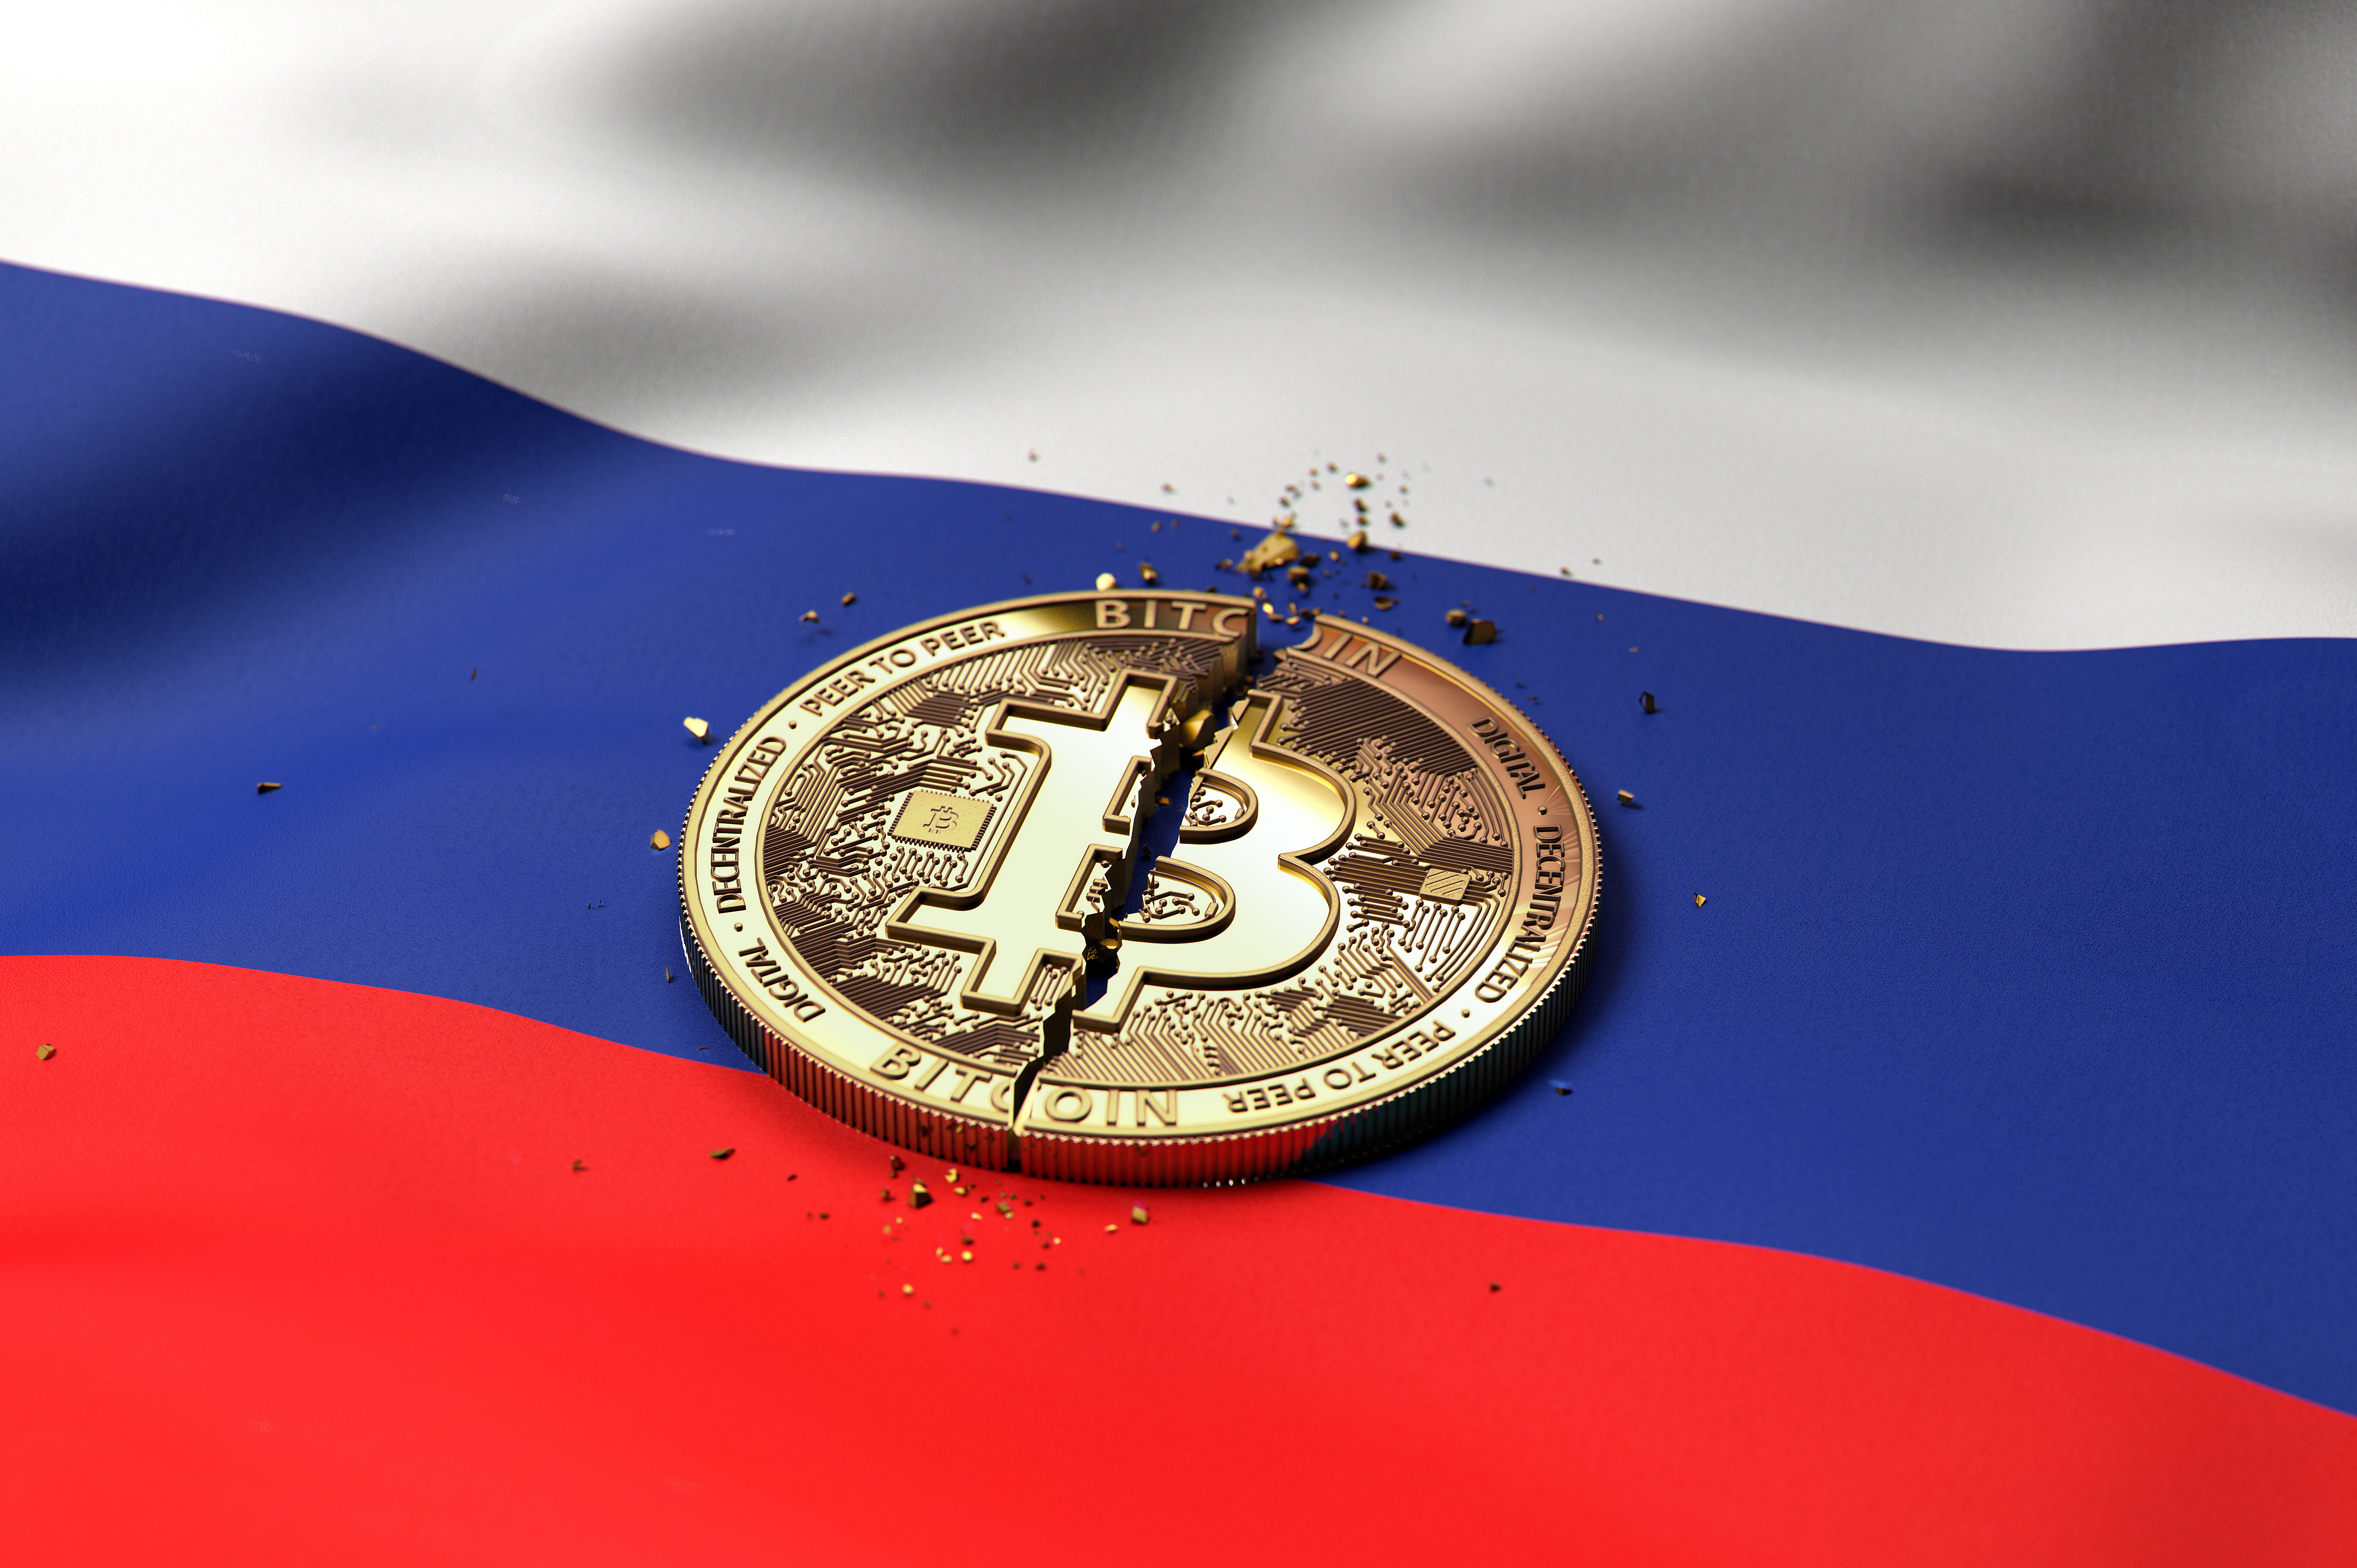 代表比特幣的破解代幣擱置在俄羅斯國旗上。